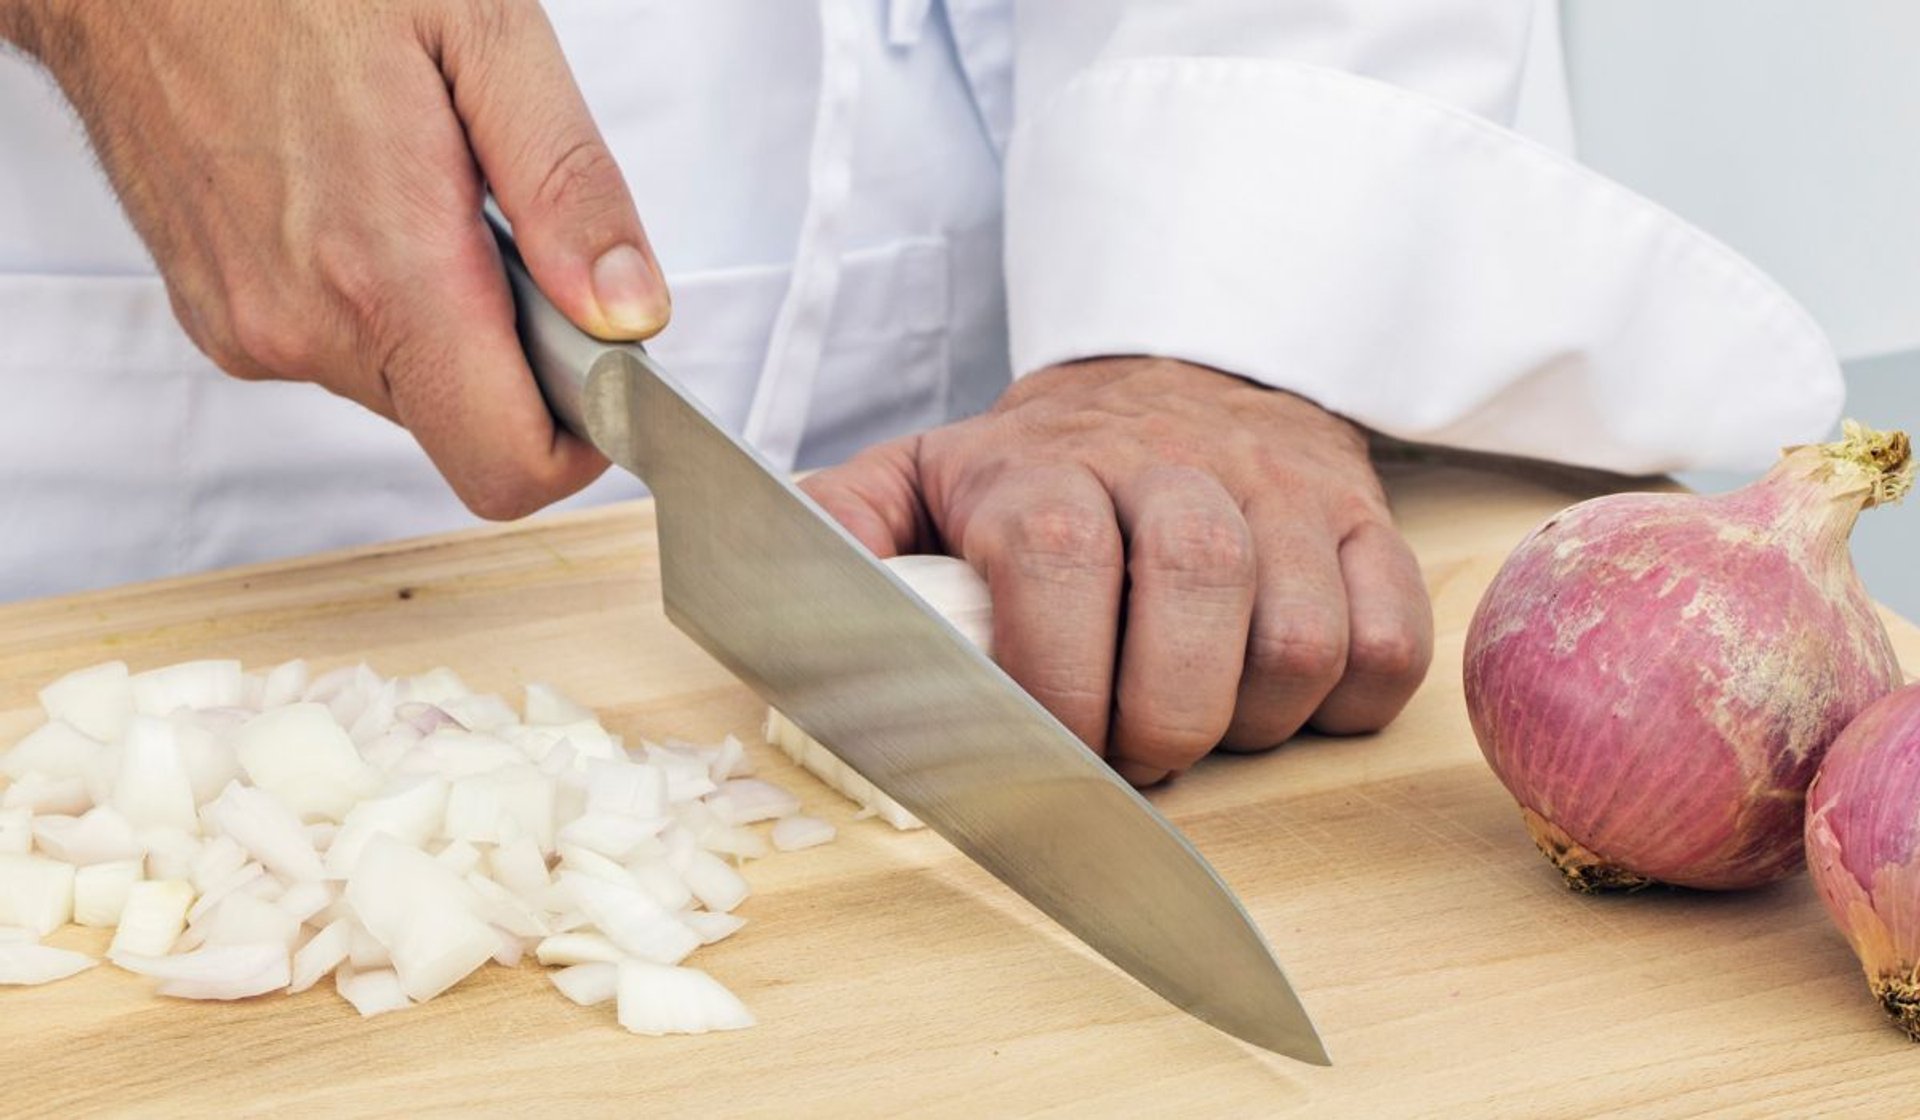 Jak kroić cebulę żeby nie szczypała w oczy? Najlepsi kucharze mają niezawodny patent. Koniecznie wypróbuj